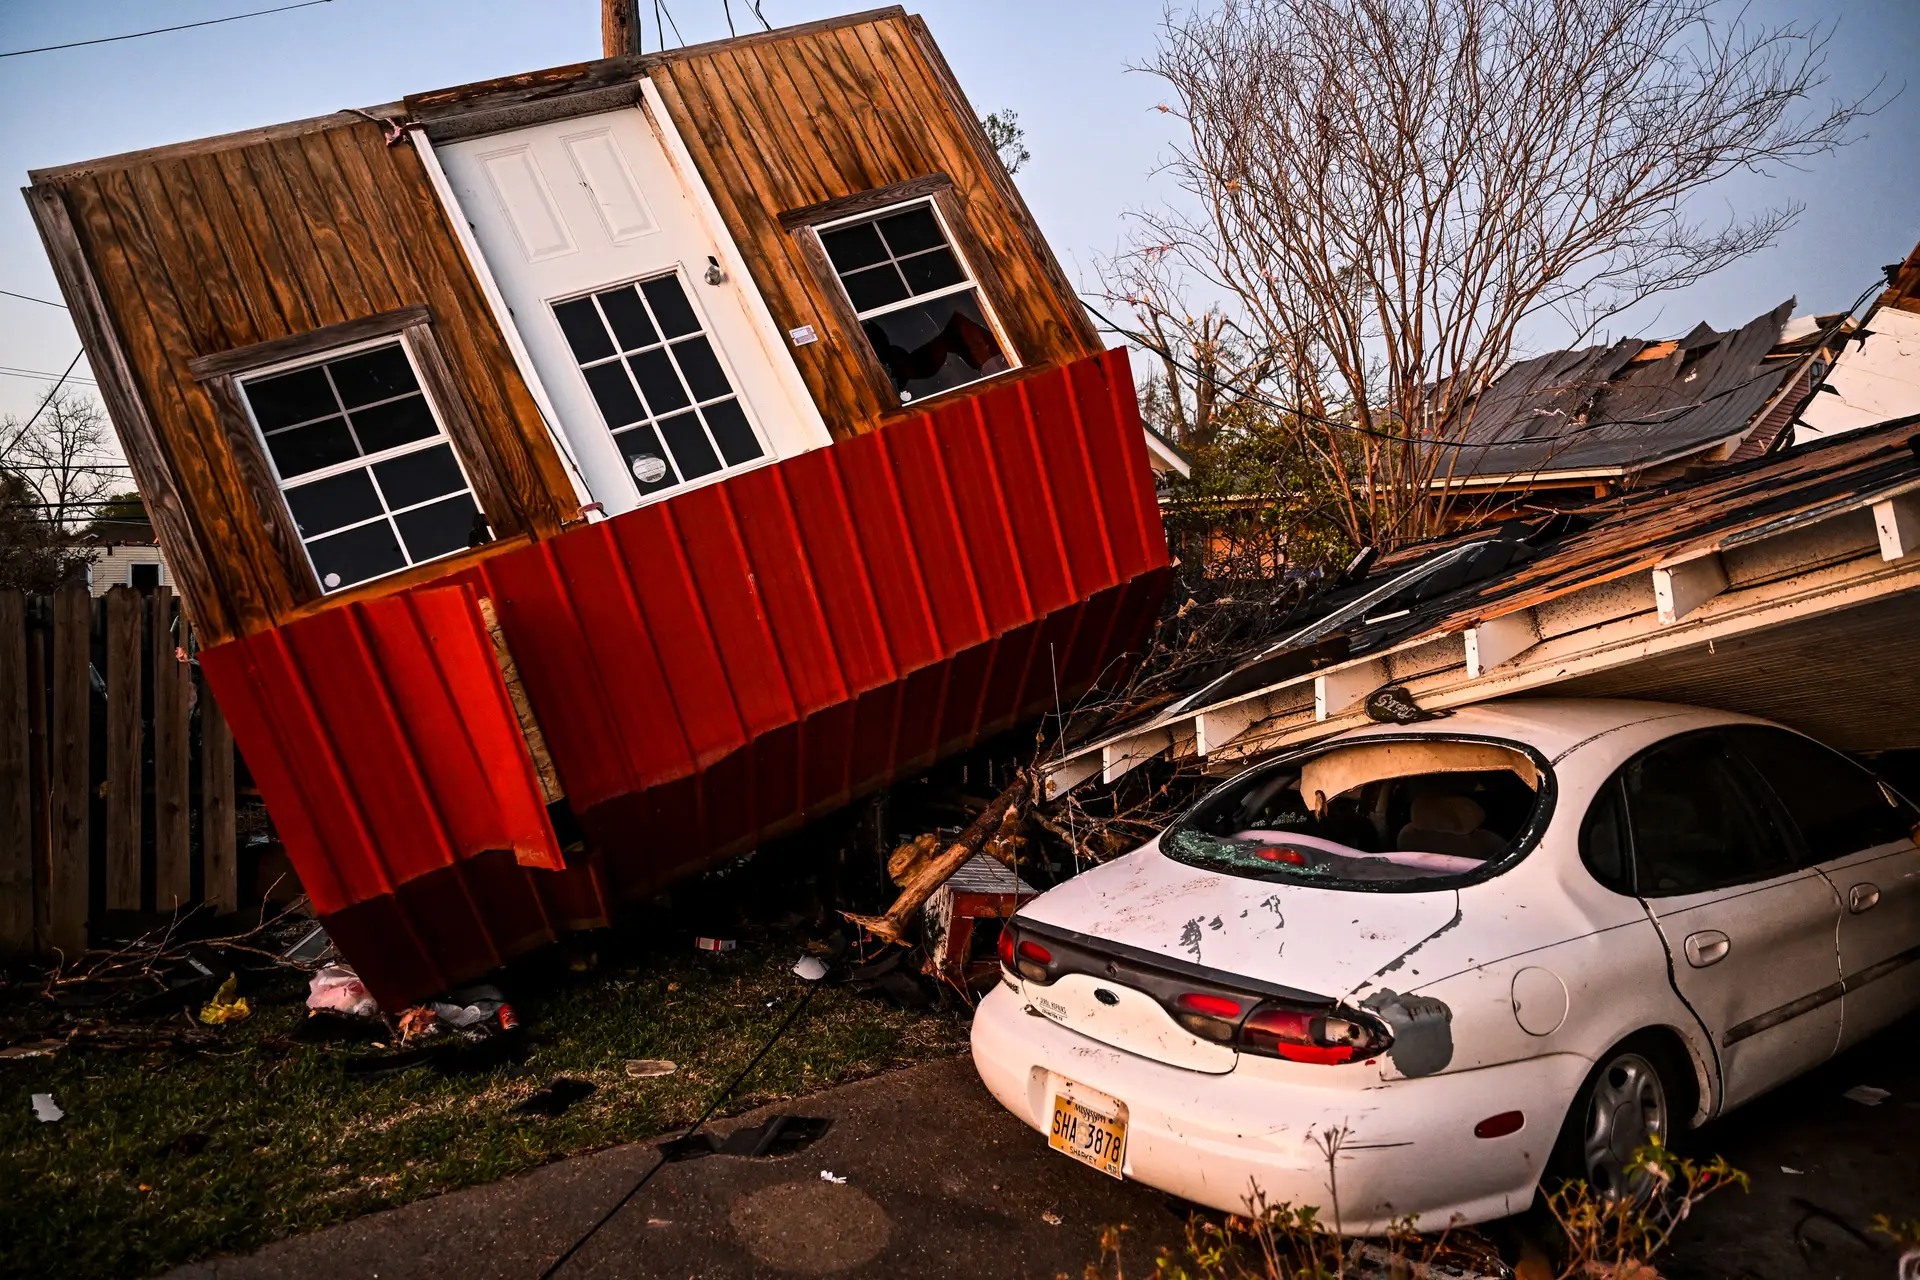 Tornados nos Estados Unidos já mataram 26 pessoas. Há uma semana, um fenómeno muito parecido fez outras tantas vítimas